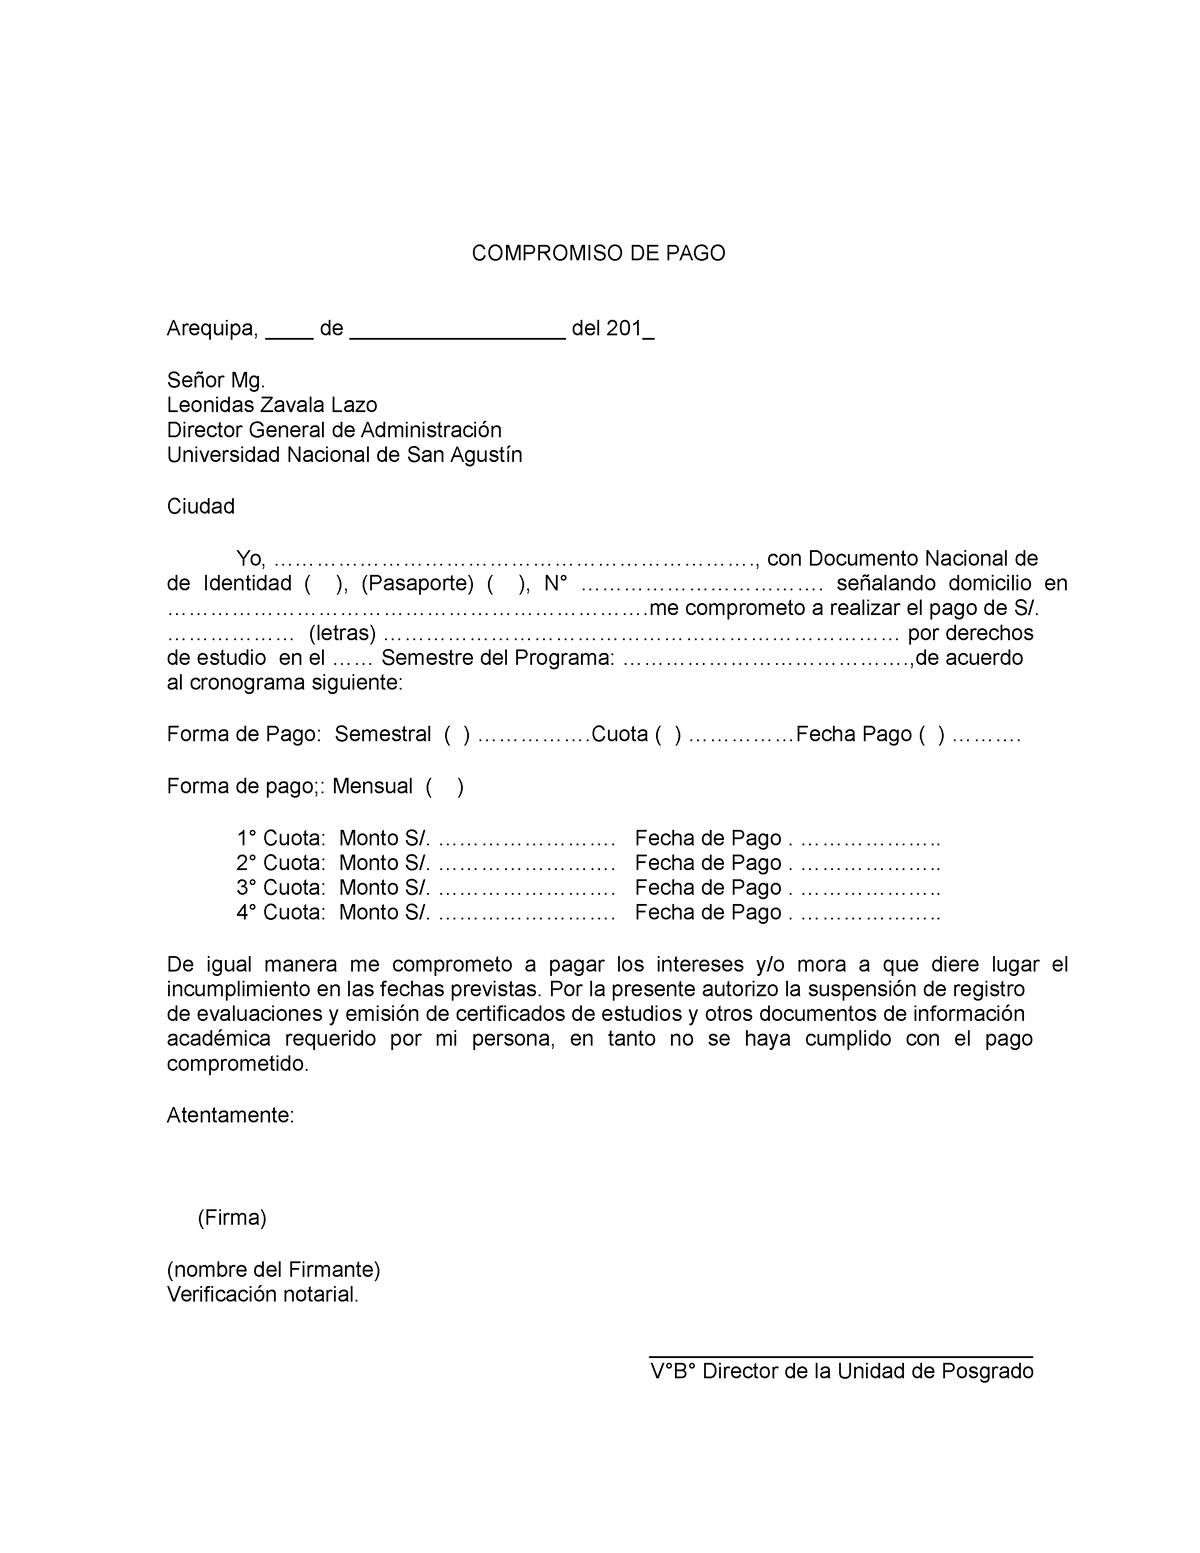 Compromiso De Pago Contrato Compromiso De Pago Arequipa De Del 201 2468